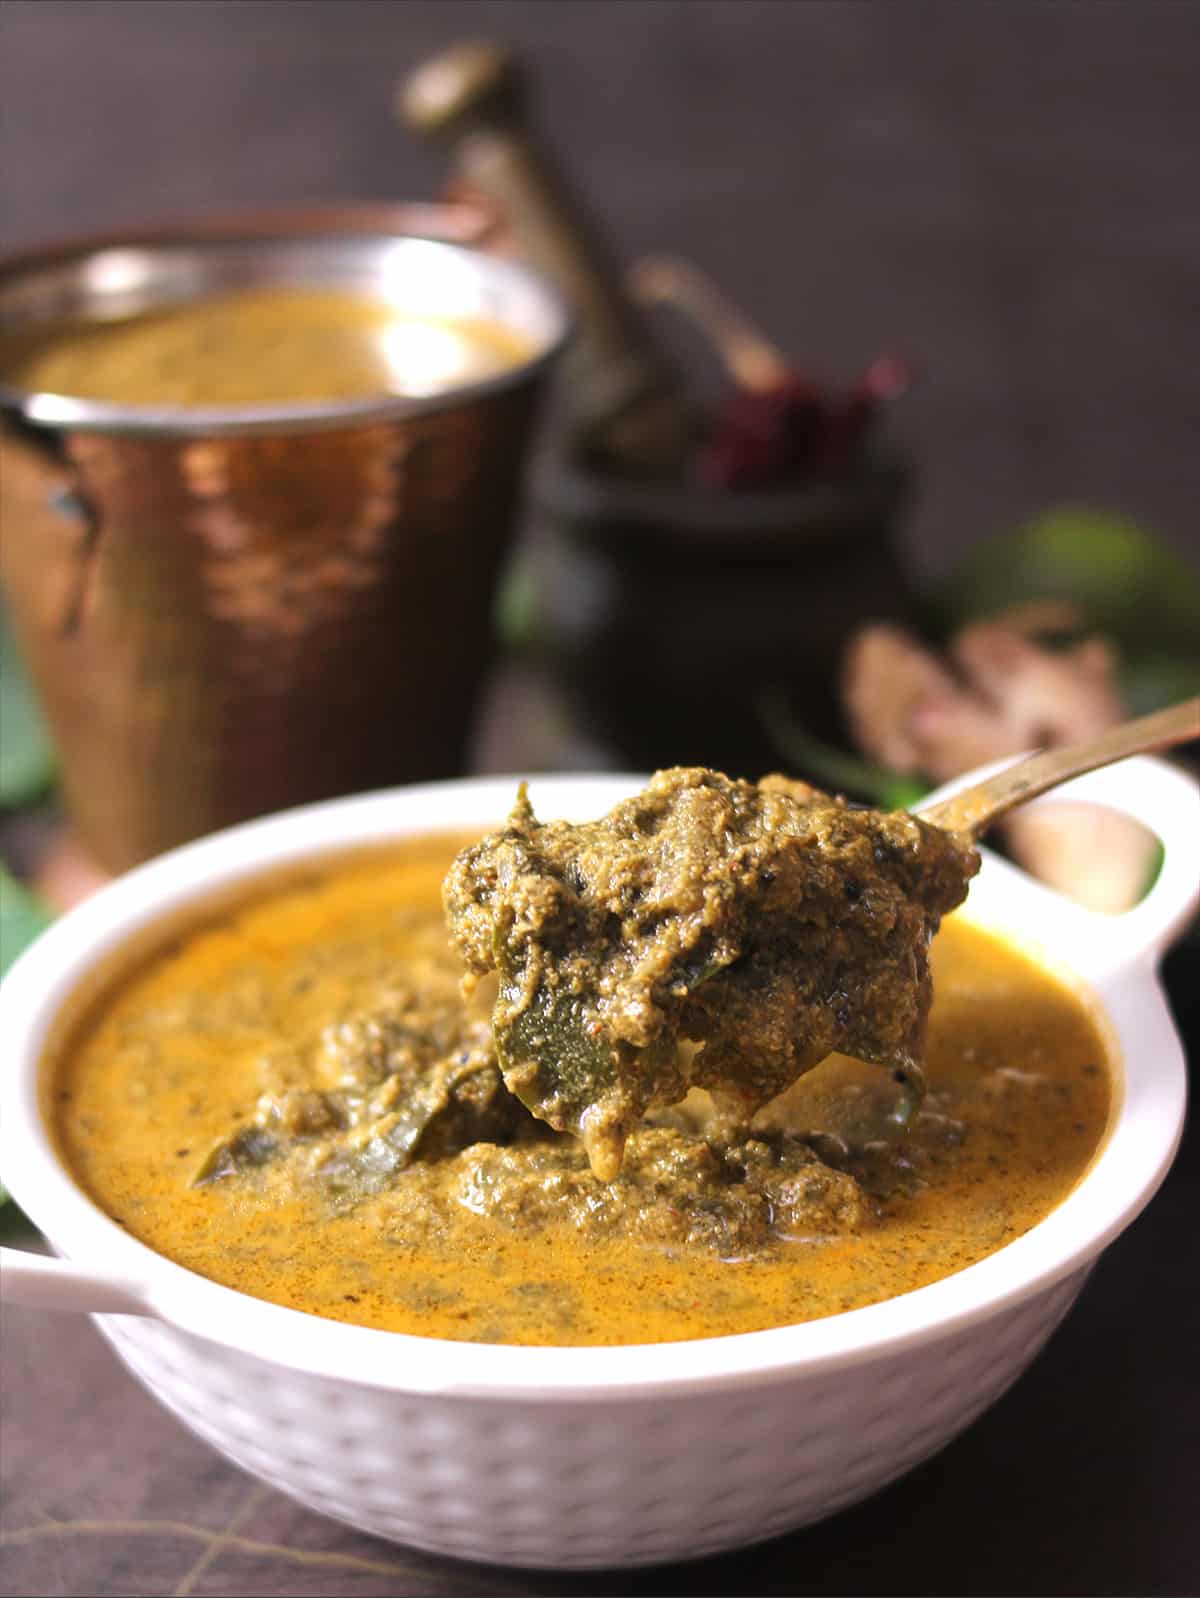 Alvati, konkani recipe prepared using taro leaves or colocasia leaves, holding curry in spoon 